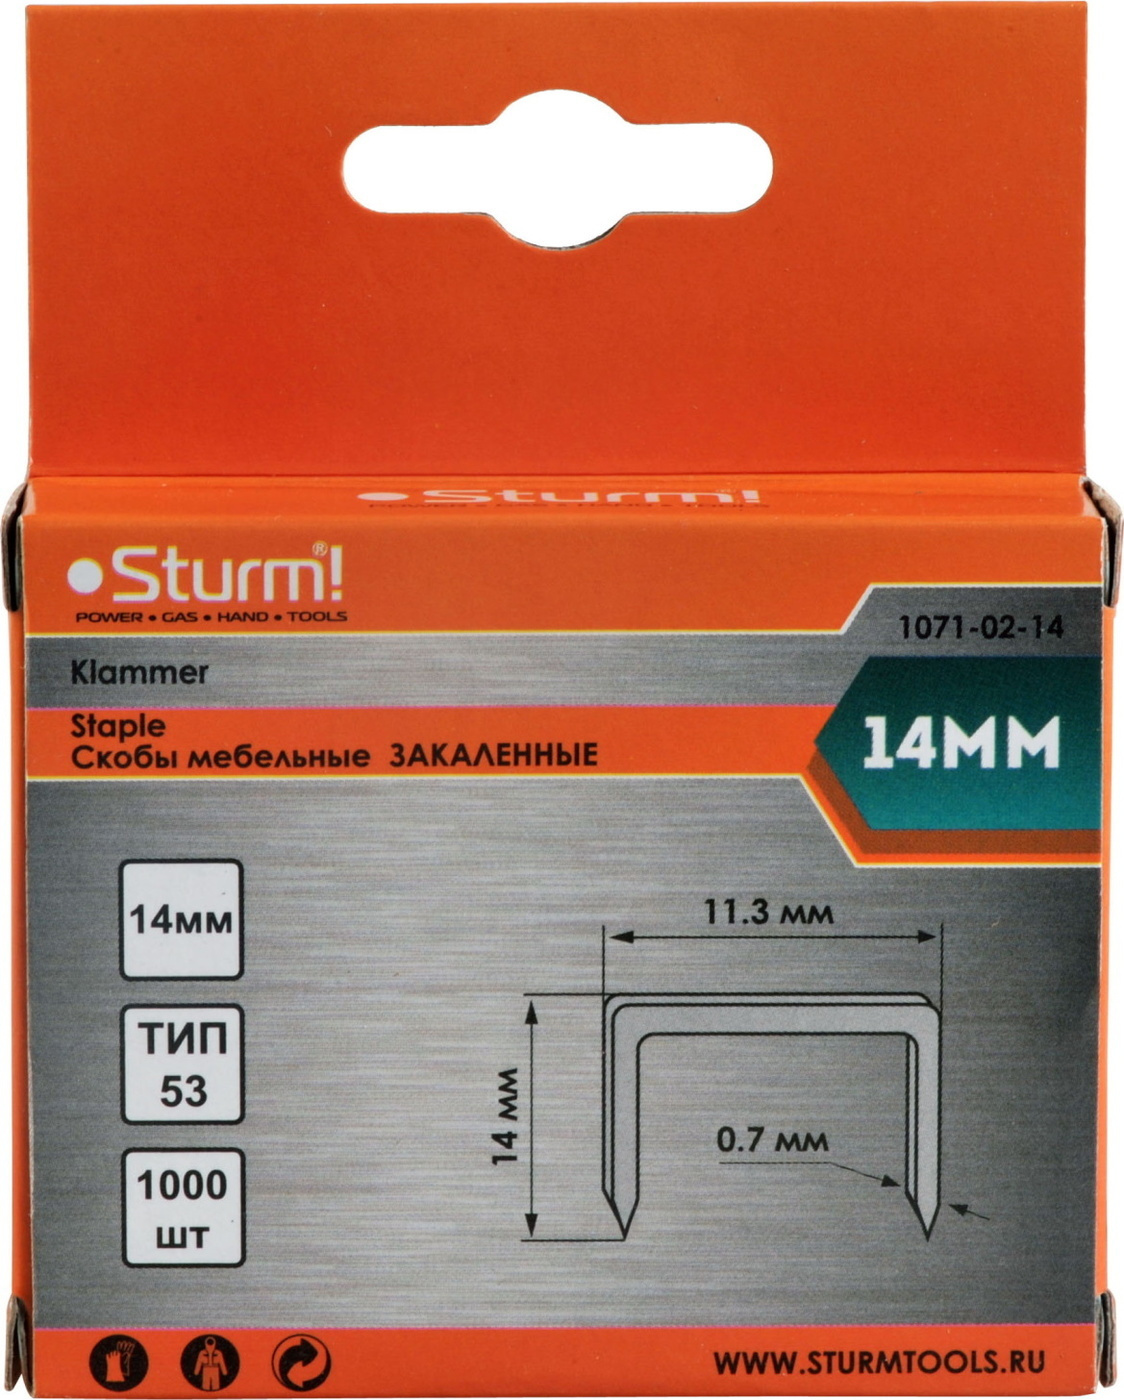 Скобы для степлера Sturm! 1071-02-14 14 мм (тип 53, 1000 шт)